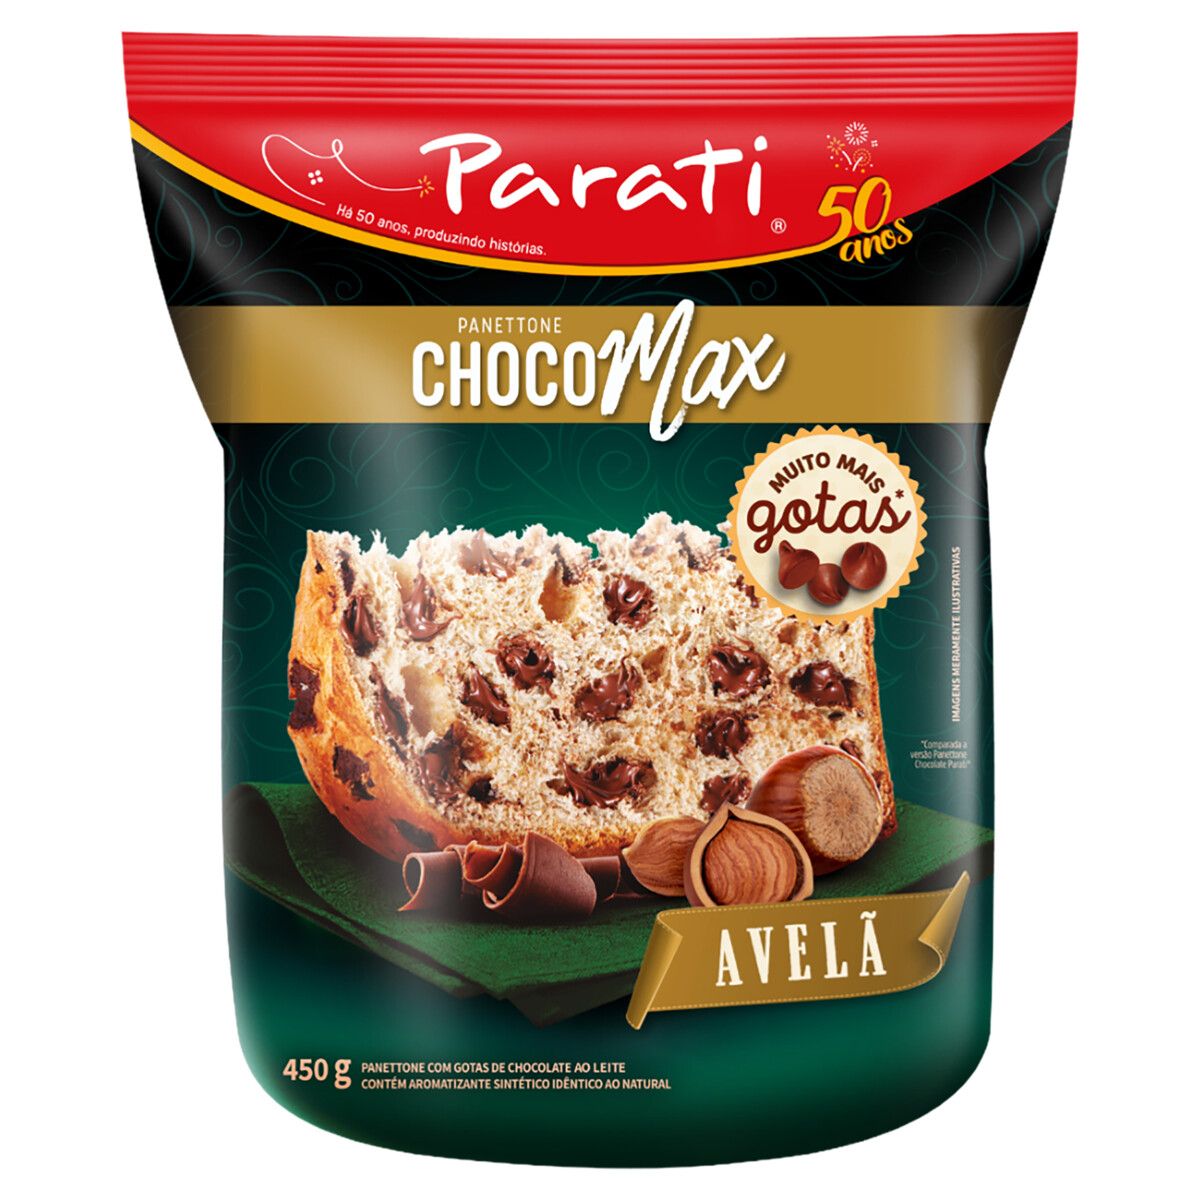 Panettone com Gotas de Chocolate ao Leite Avelã Parati Choco Max Pacote 450g